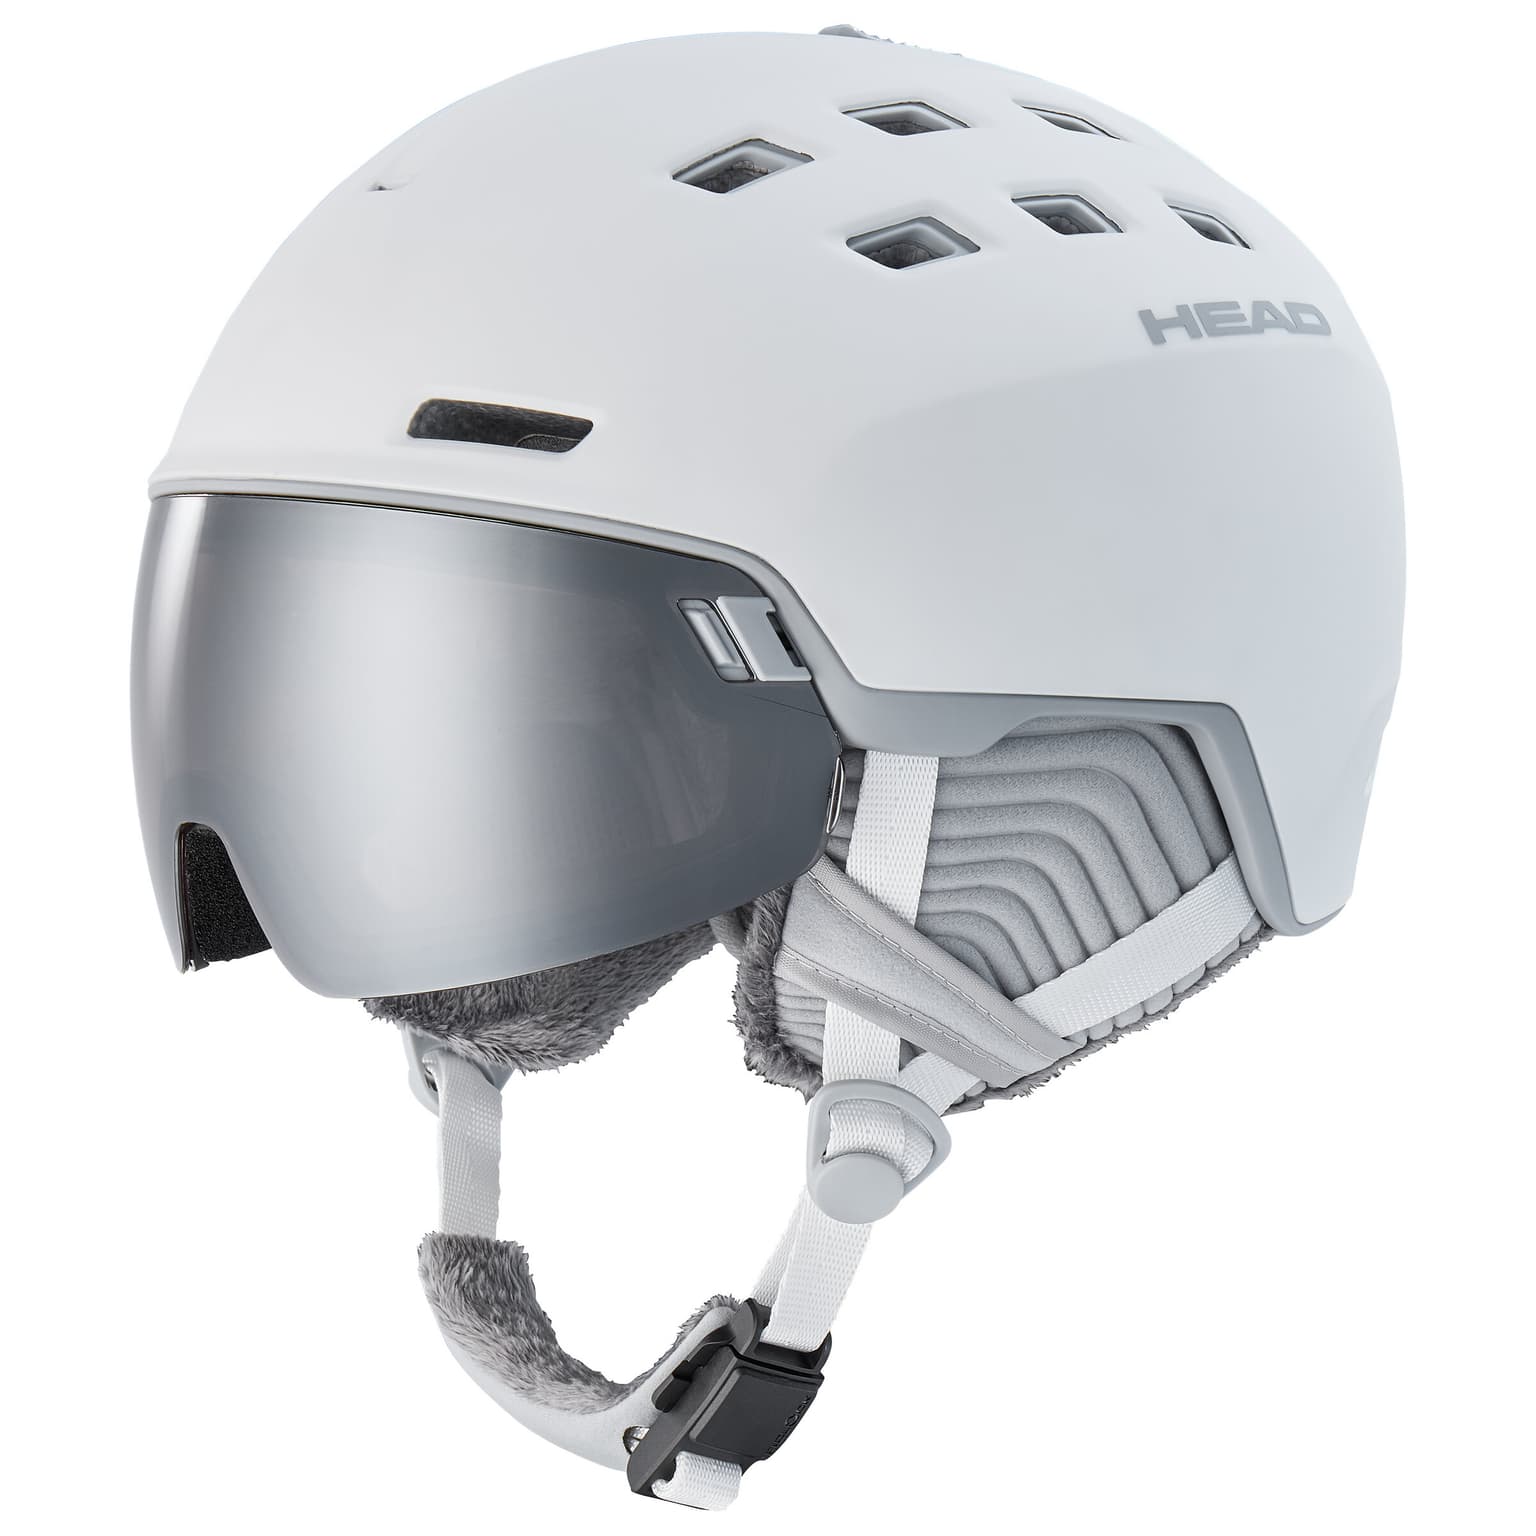 Head Head Radar+ Visor (SpareLens) Casco da sci bianco 1